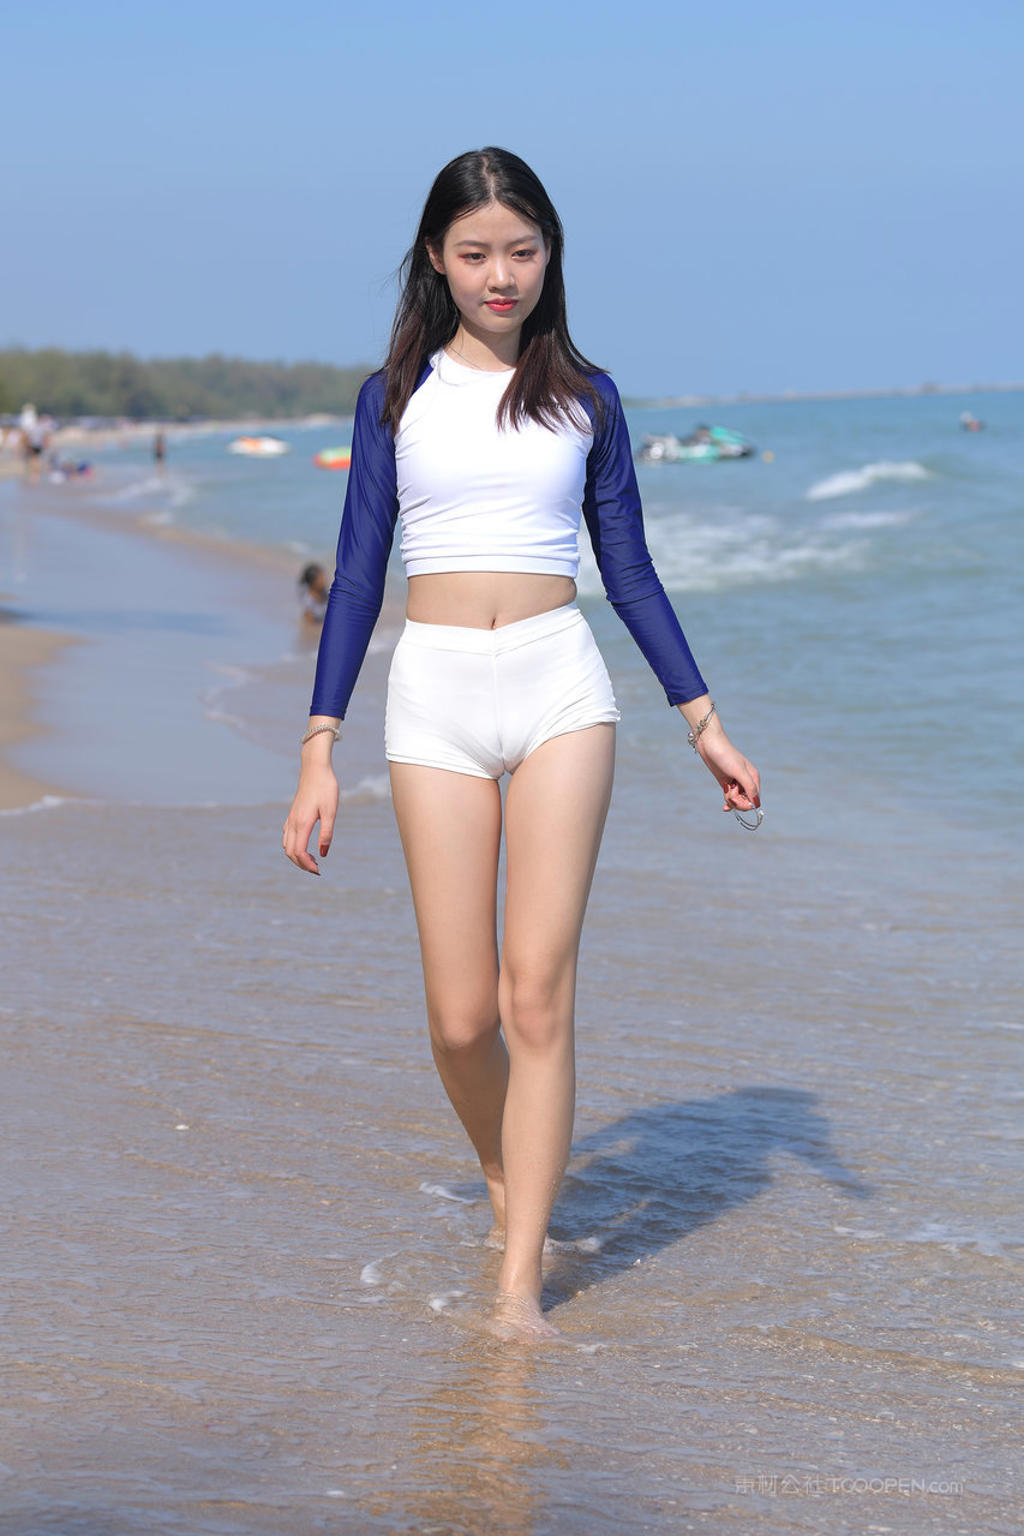 亚洲偷拍沙滩上长腿美女性感图片高清